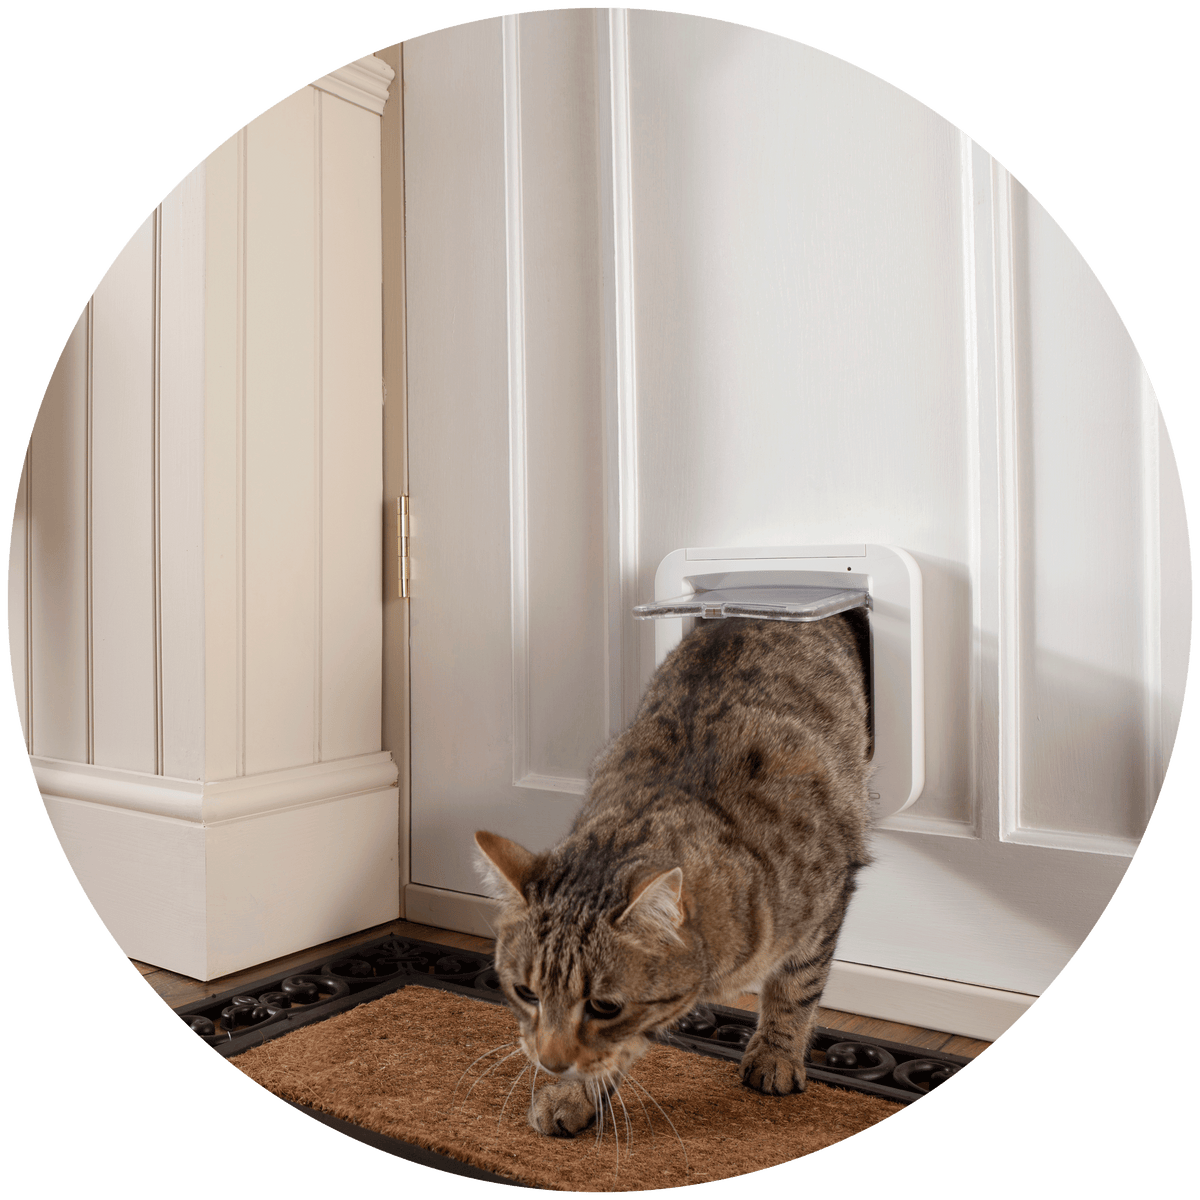 cat door company